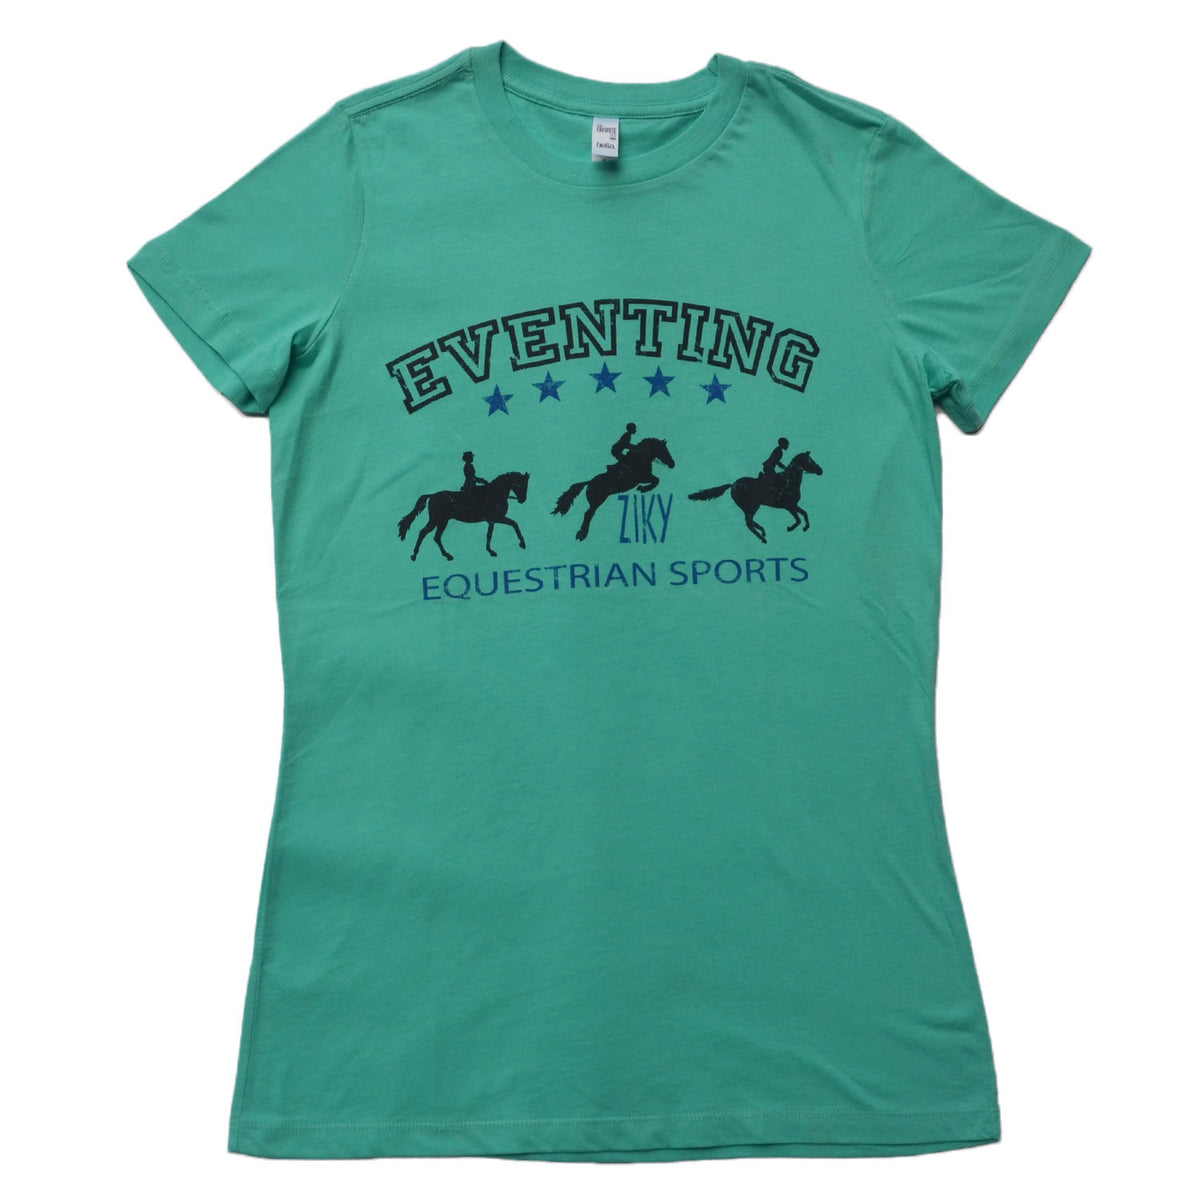 Junior eventing horse riding shirt